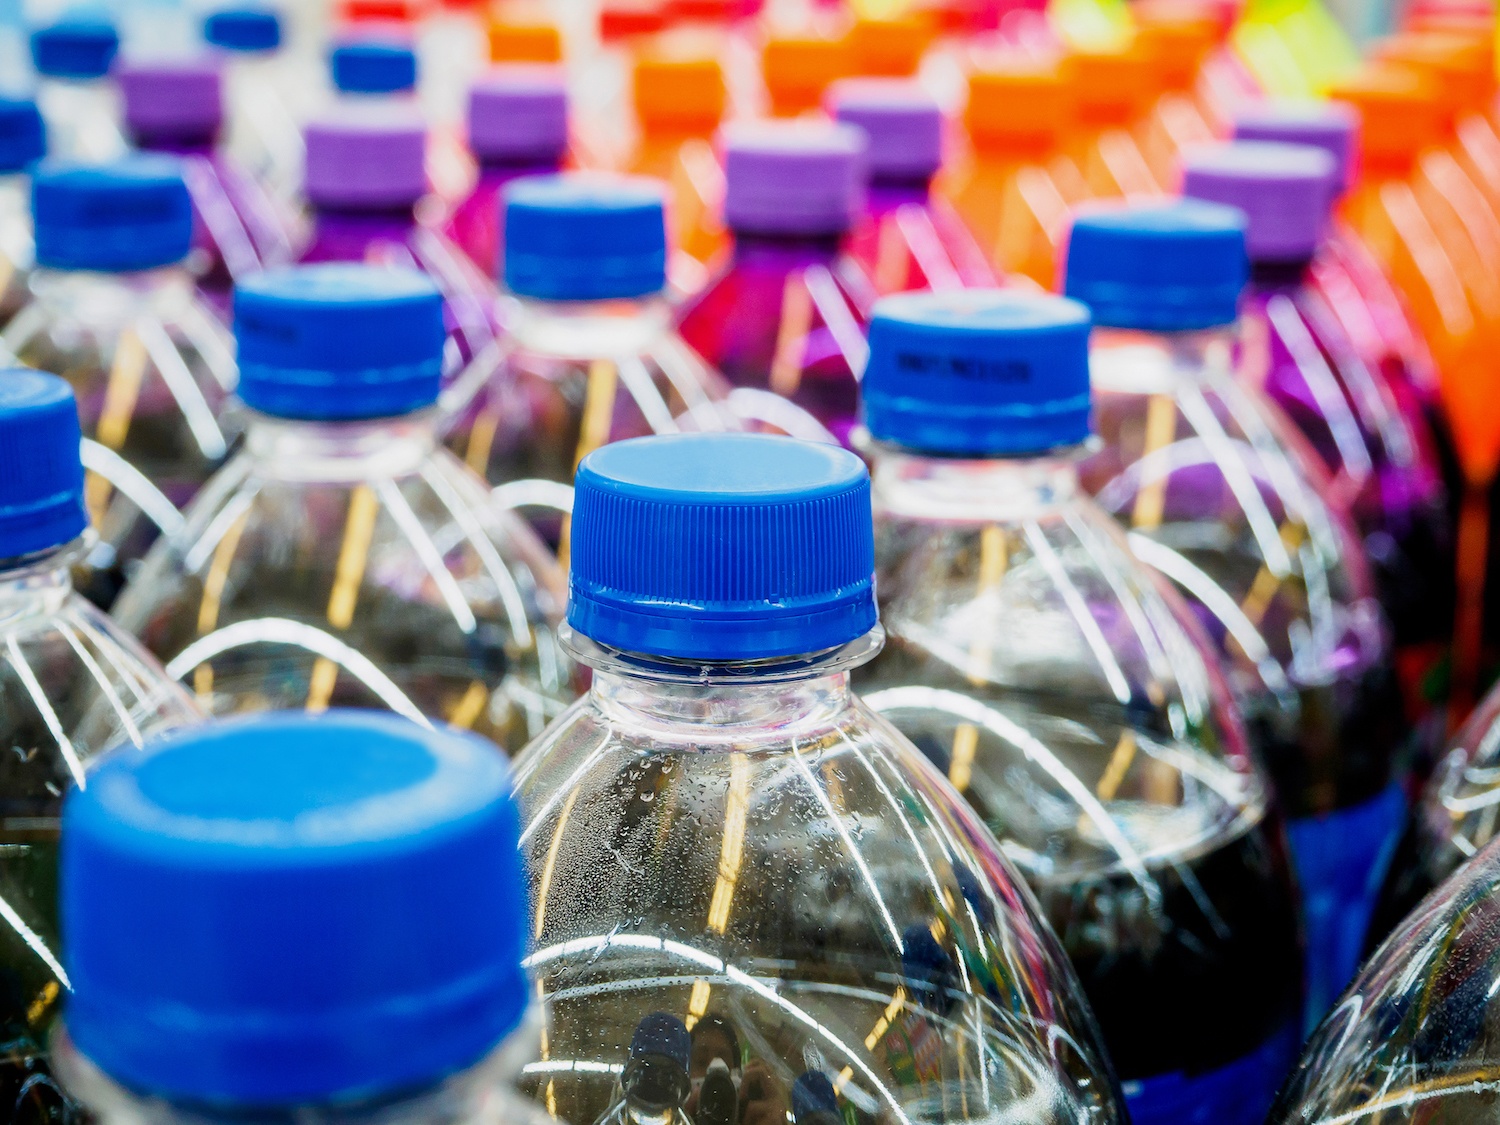 Tops of plastic soda bottles stored in supermarket. December 2021